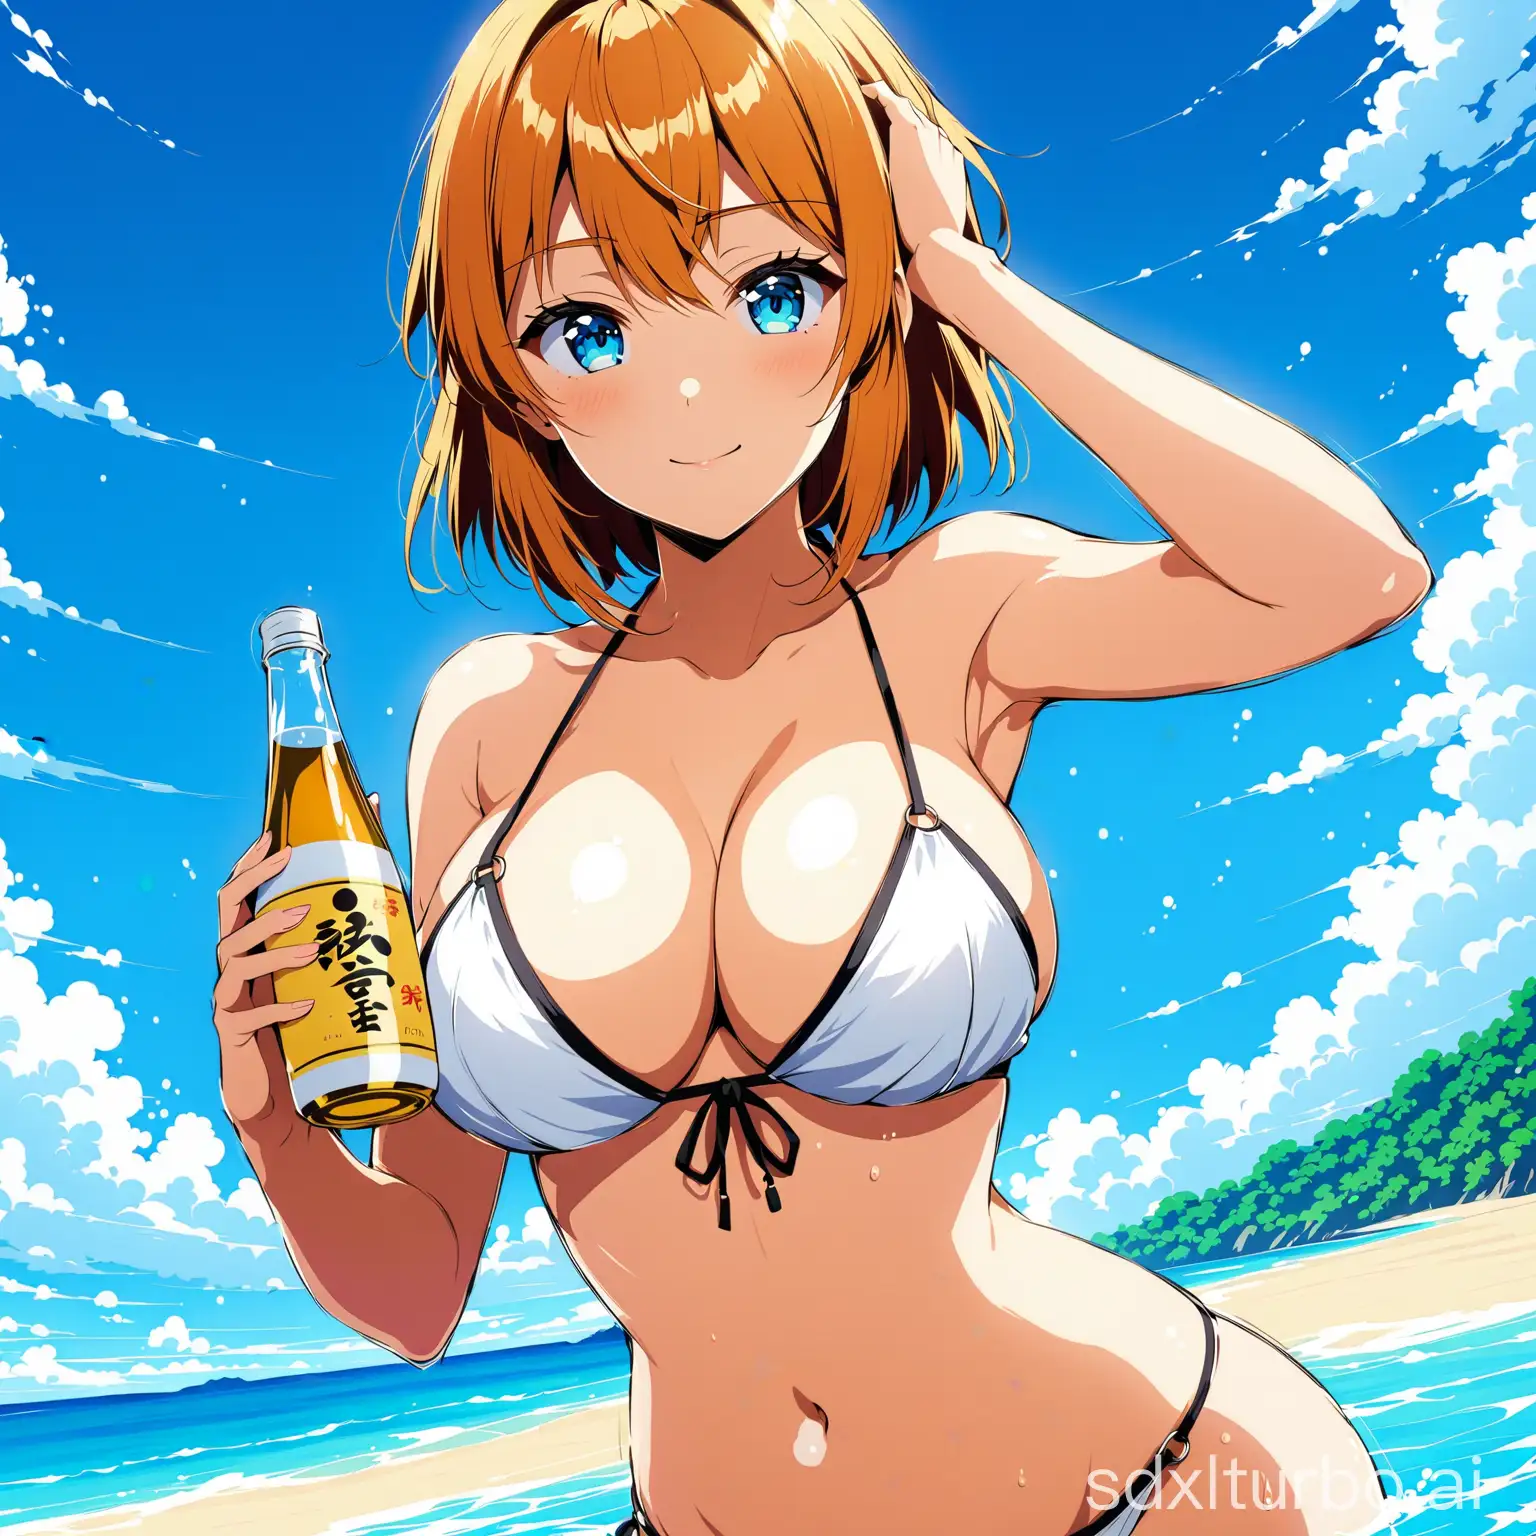 sexy anime girl in bikini holding sake